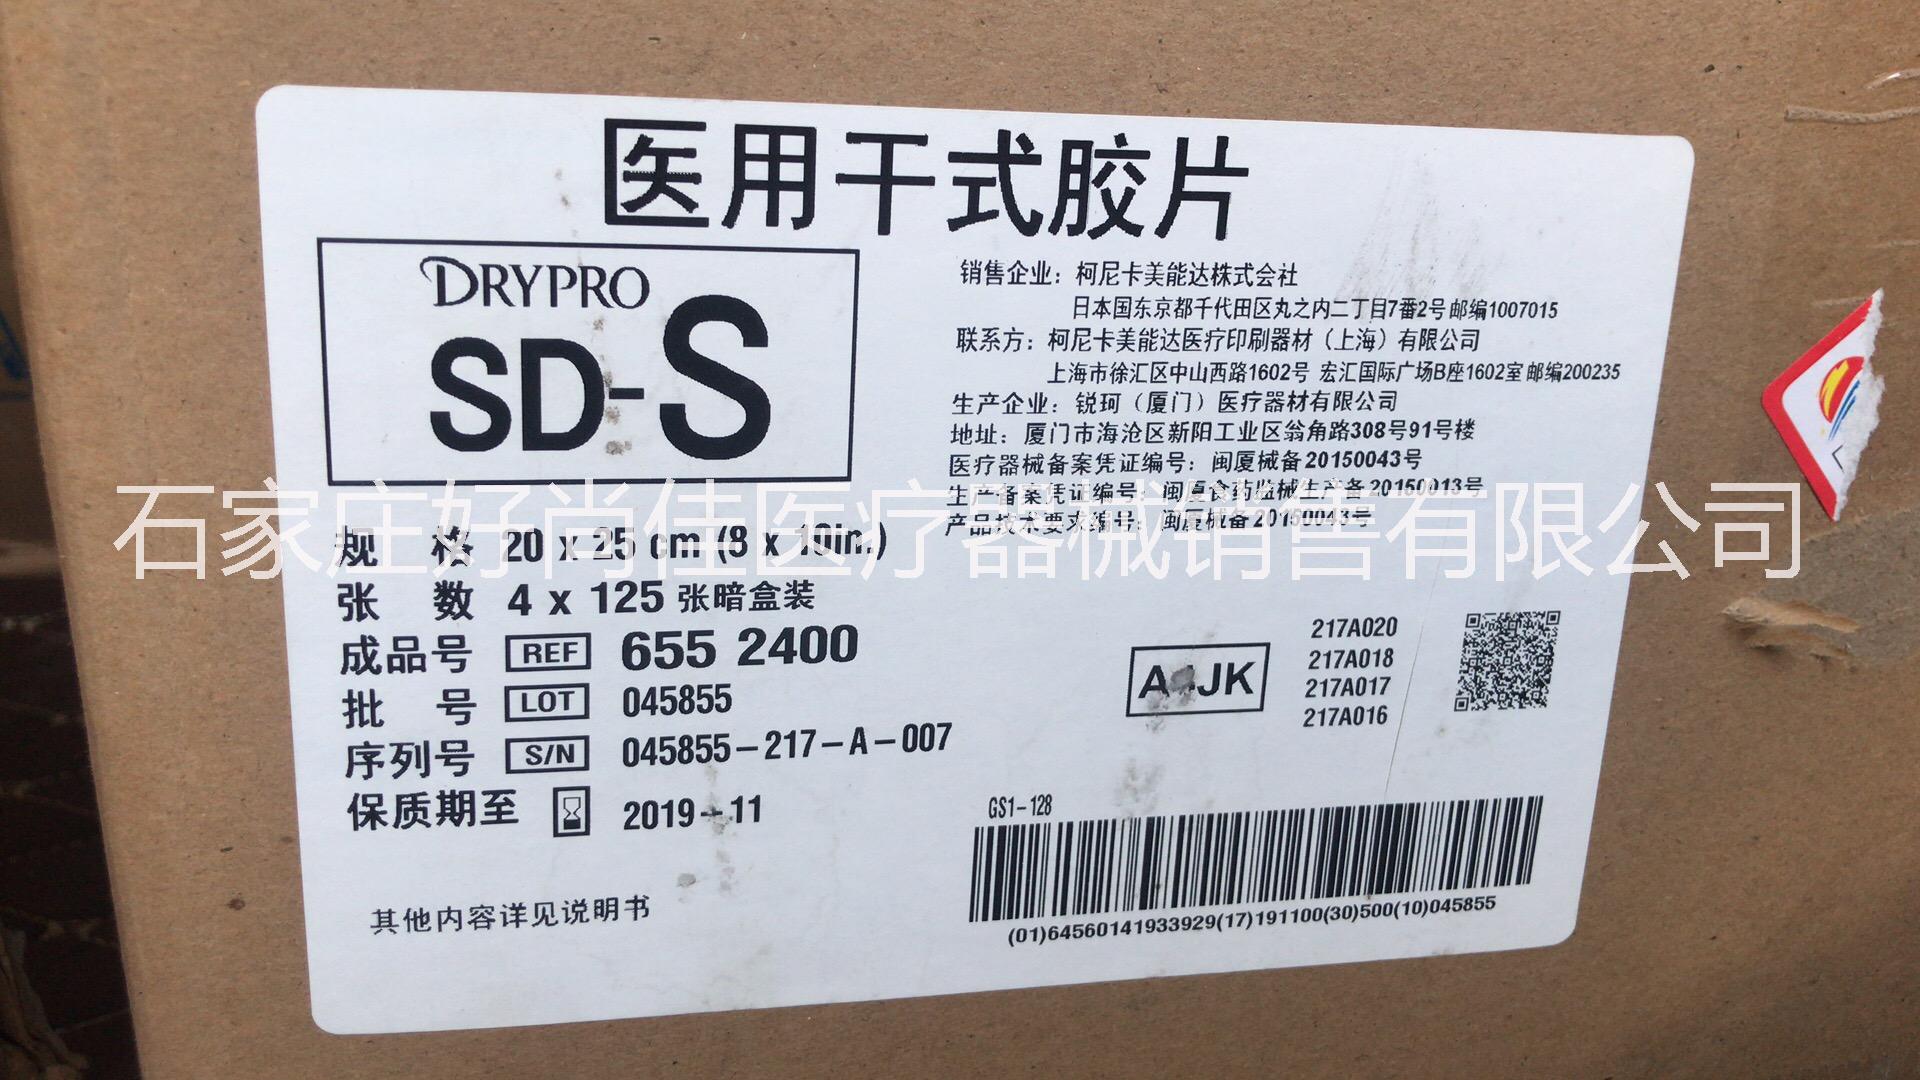 大量批发 柯尼卡 SD-S 8x10 激光胶片 柯尼卡激光 激光胶片  大量批发柯尼卡SD-S 8x10